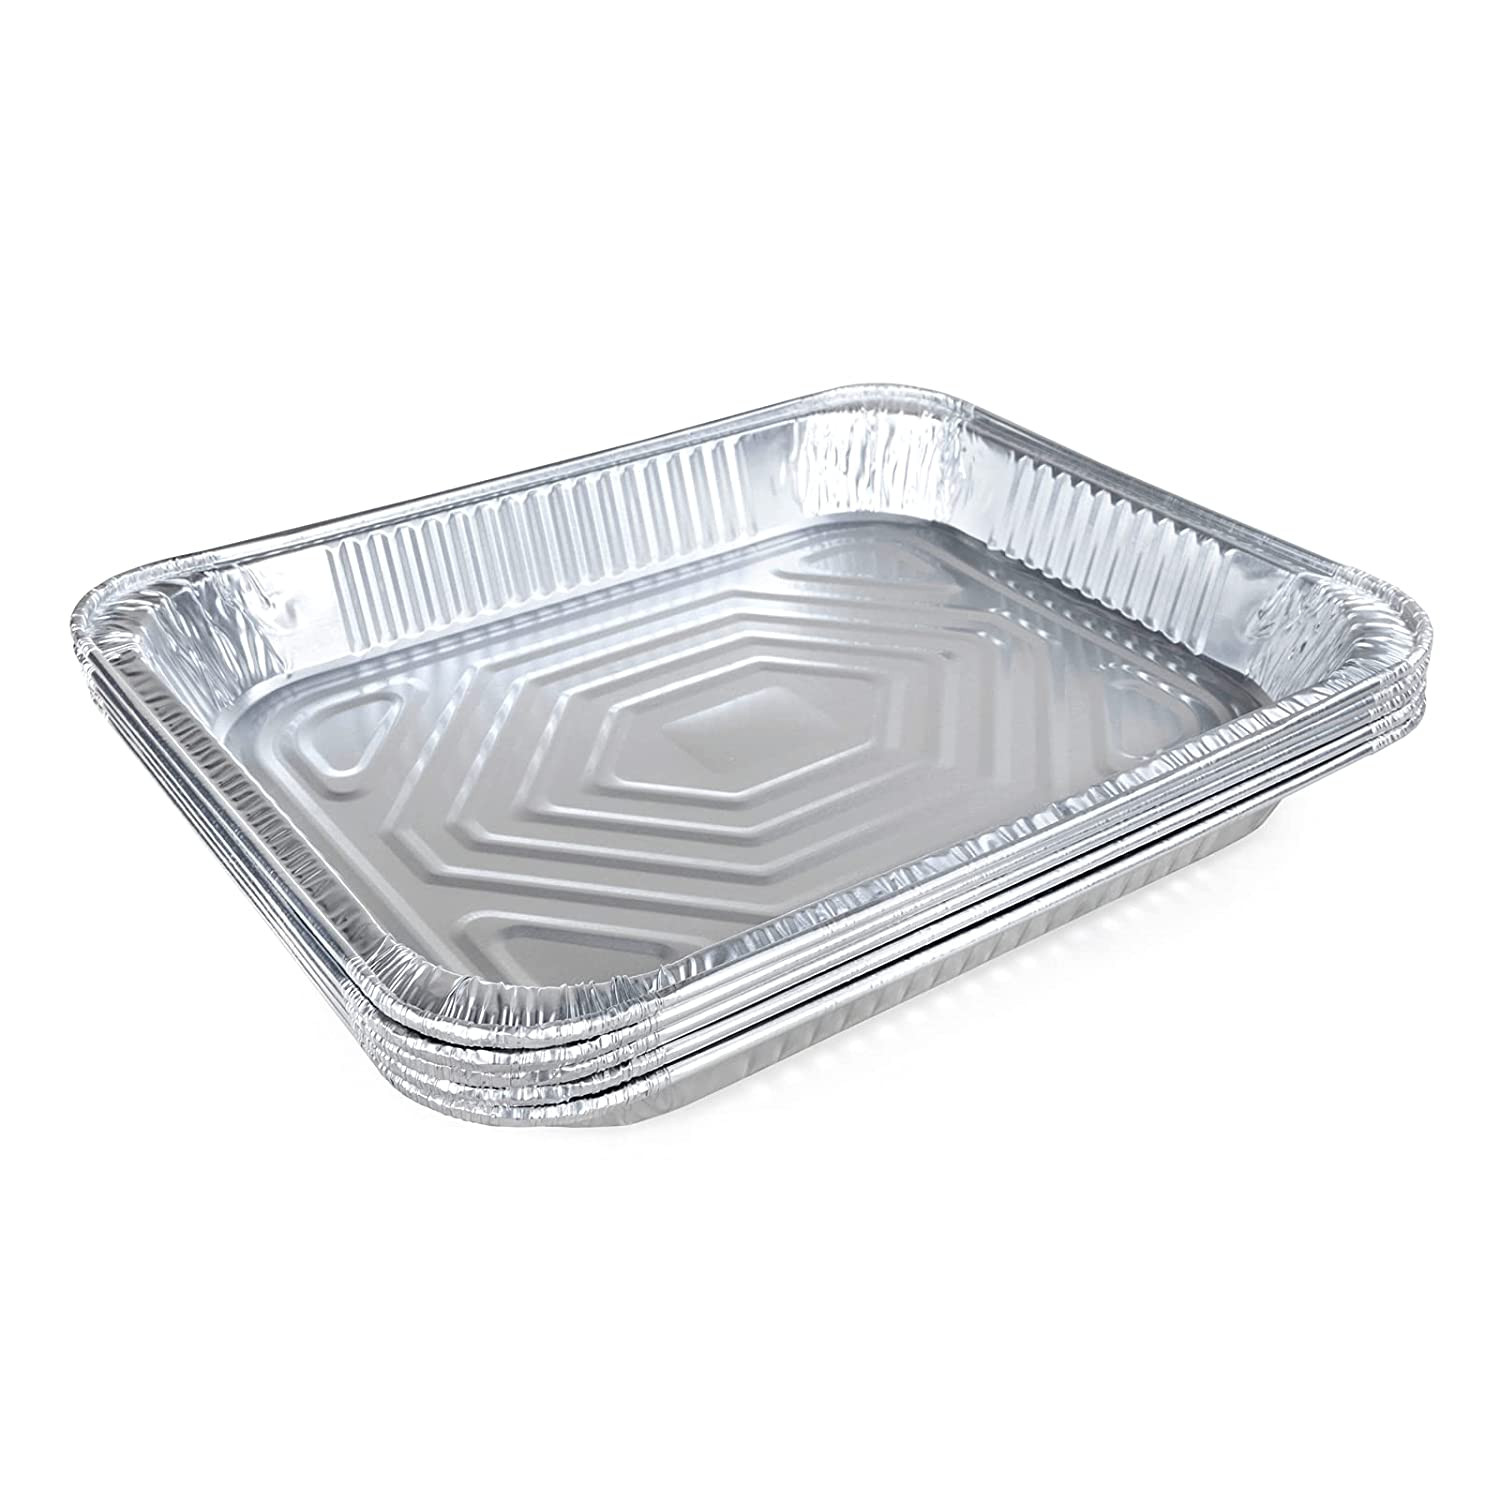 TigerChef Disposable Aluminum Foil Quarter Size Steam Table Baking